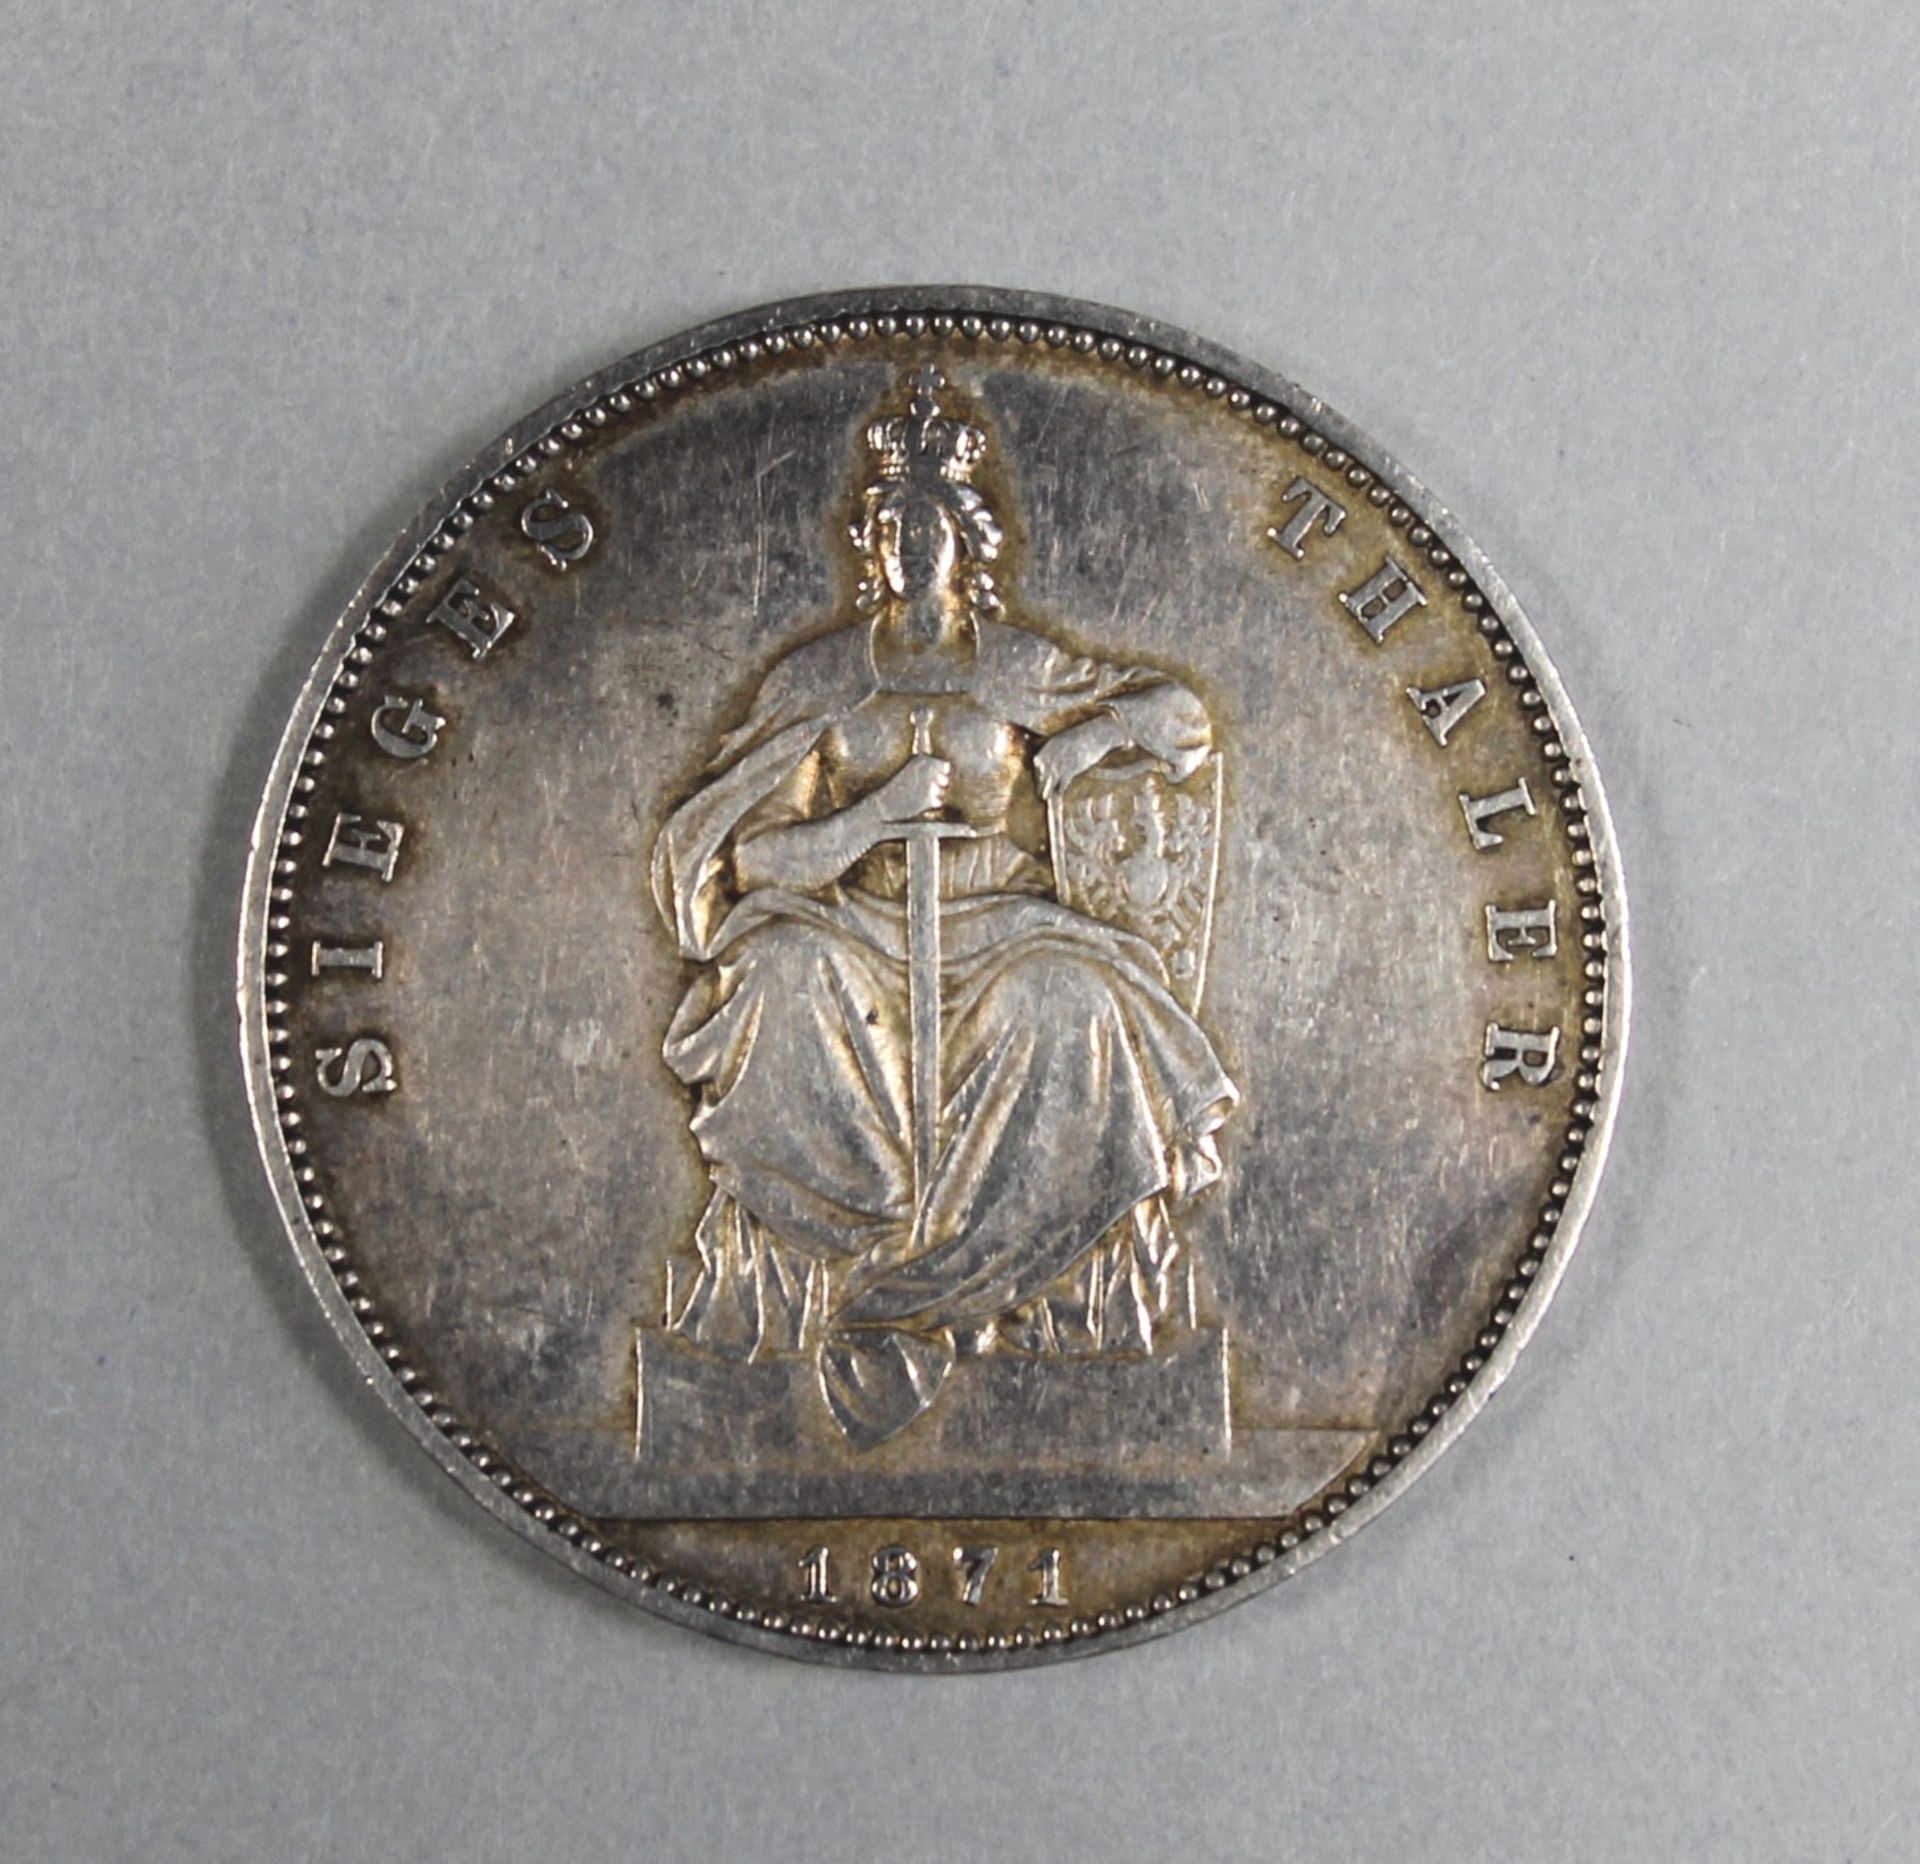 1 Münze Silber "Sieges Thaler 1871, Wilhelm König von Preussen", D ca. 35mm, (ca. 18,45g) - Image 2 of 2